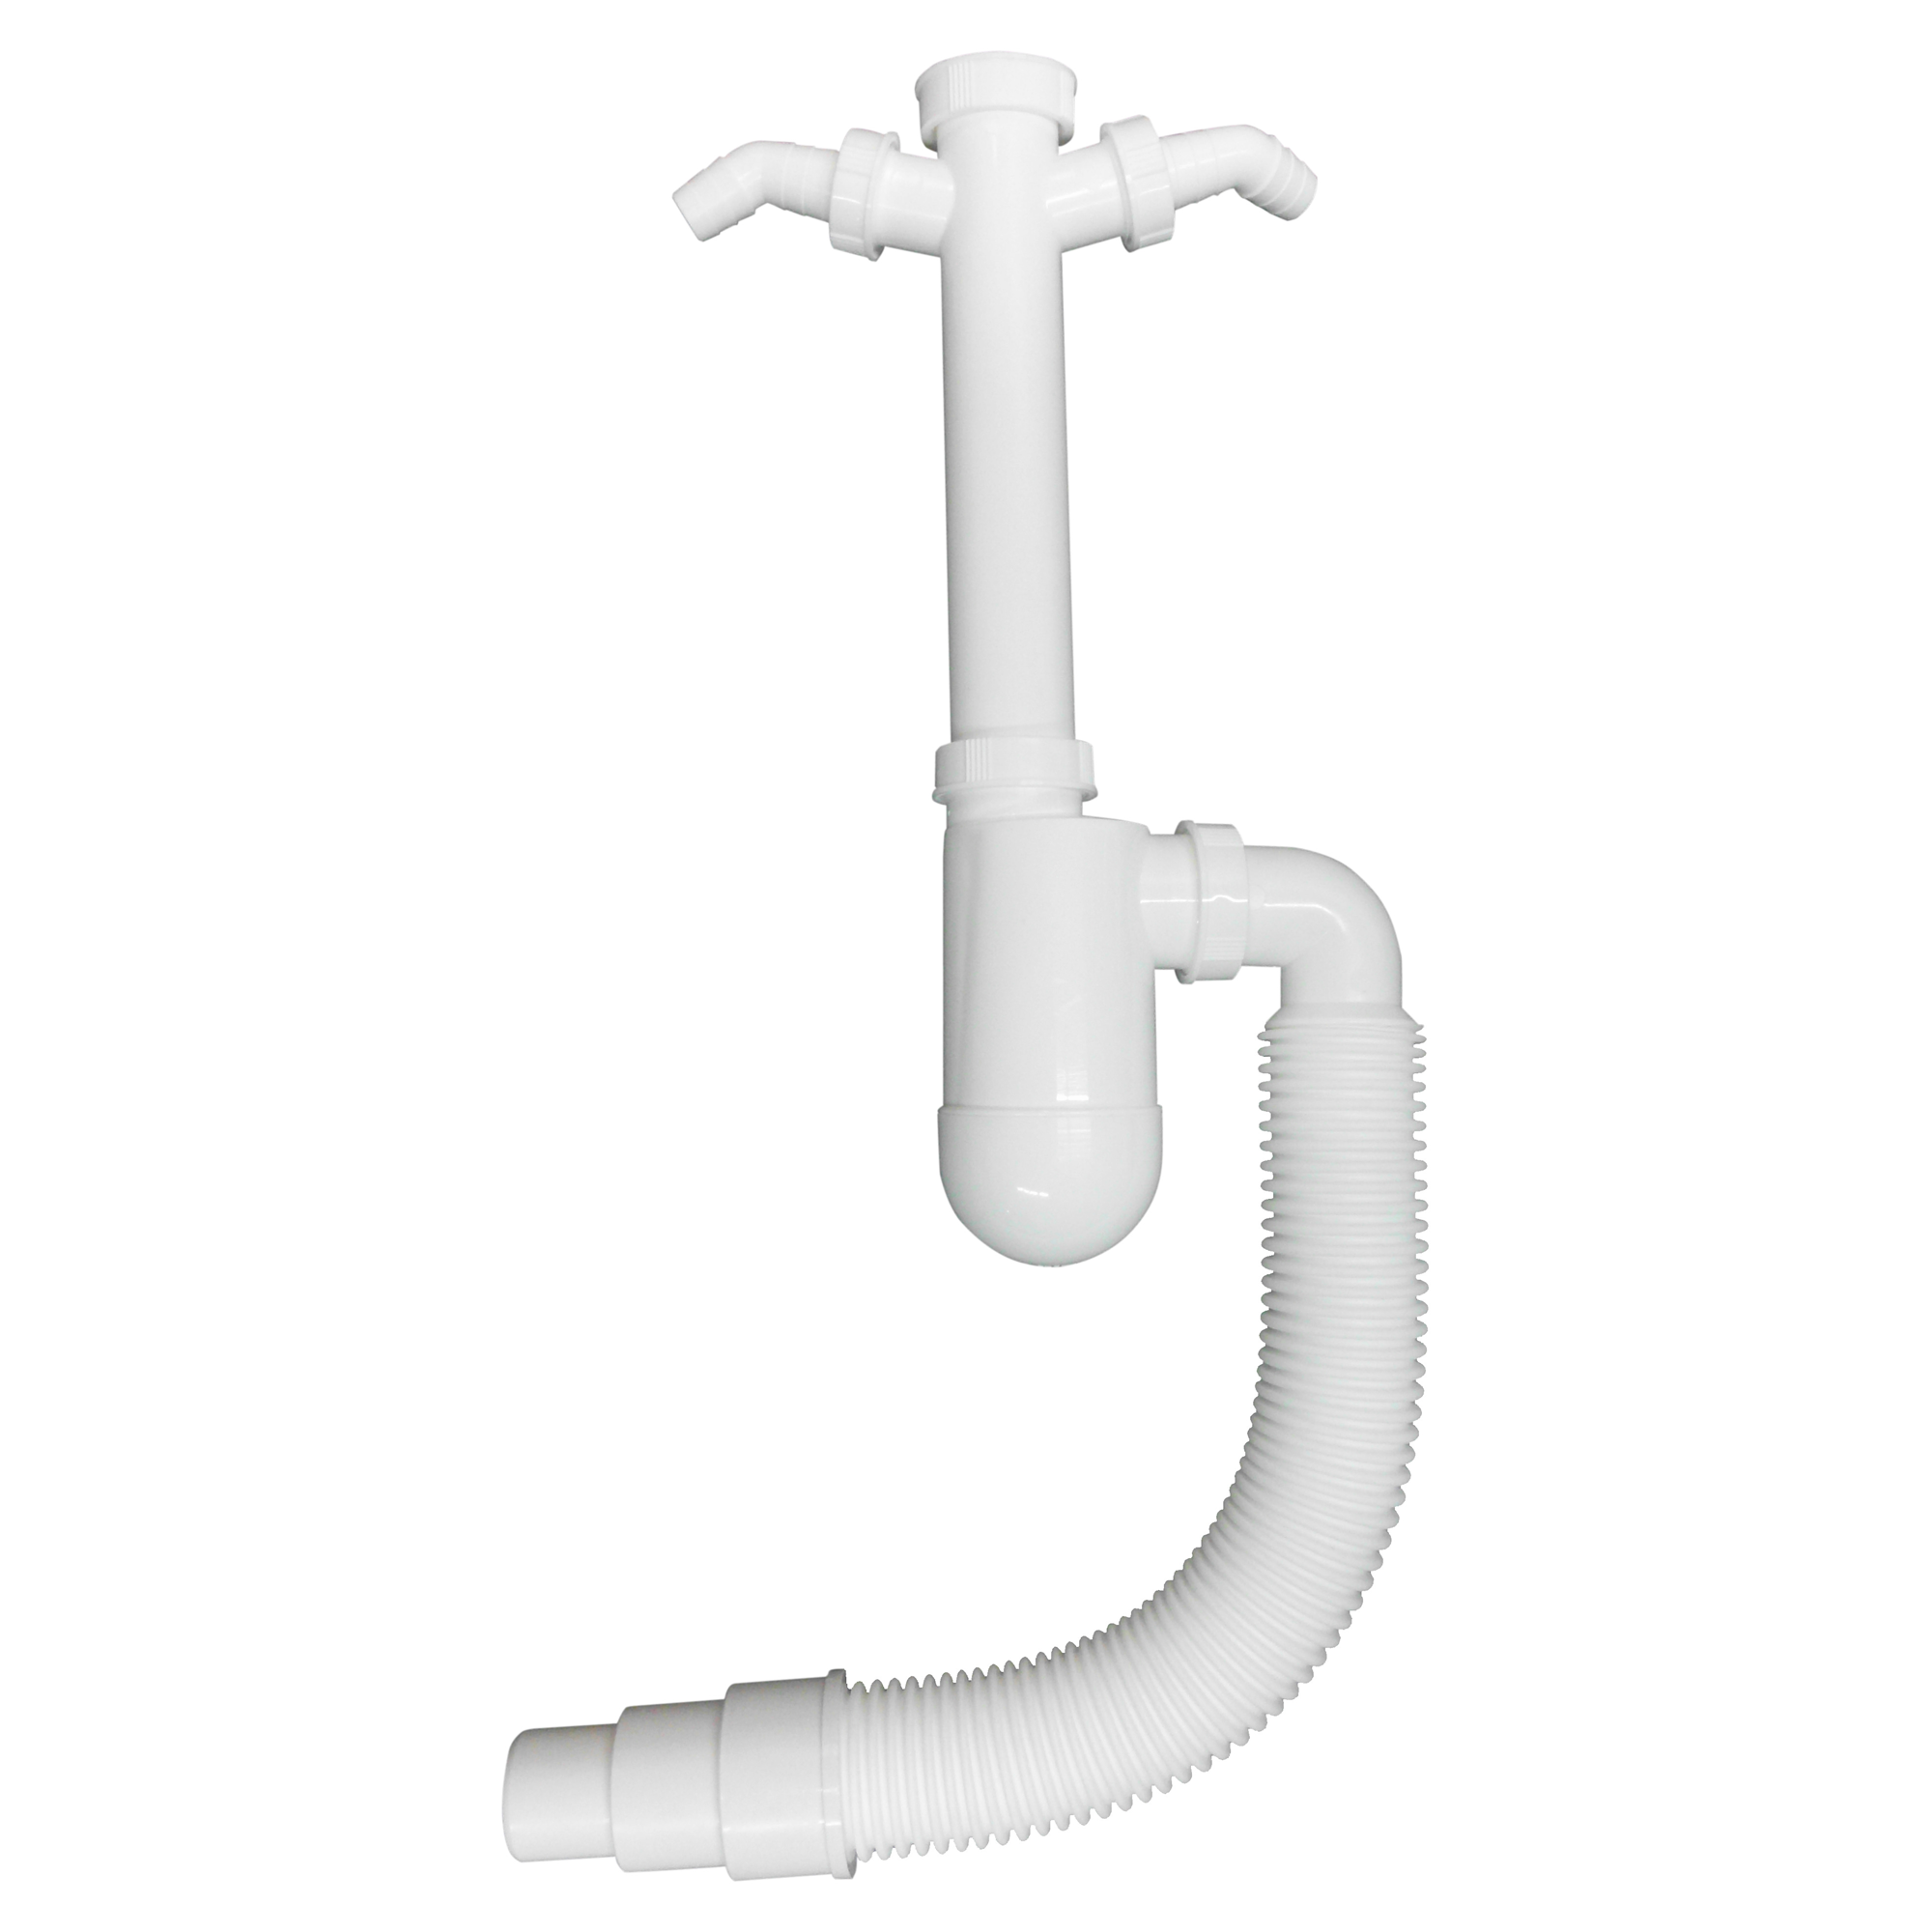 Tassengeruchsverschluss 2 Maschinenanschlüsse flexibel weiß + product picture